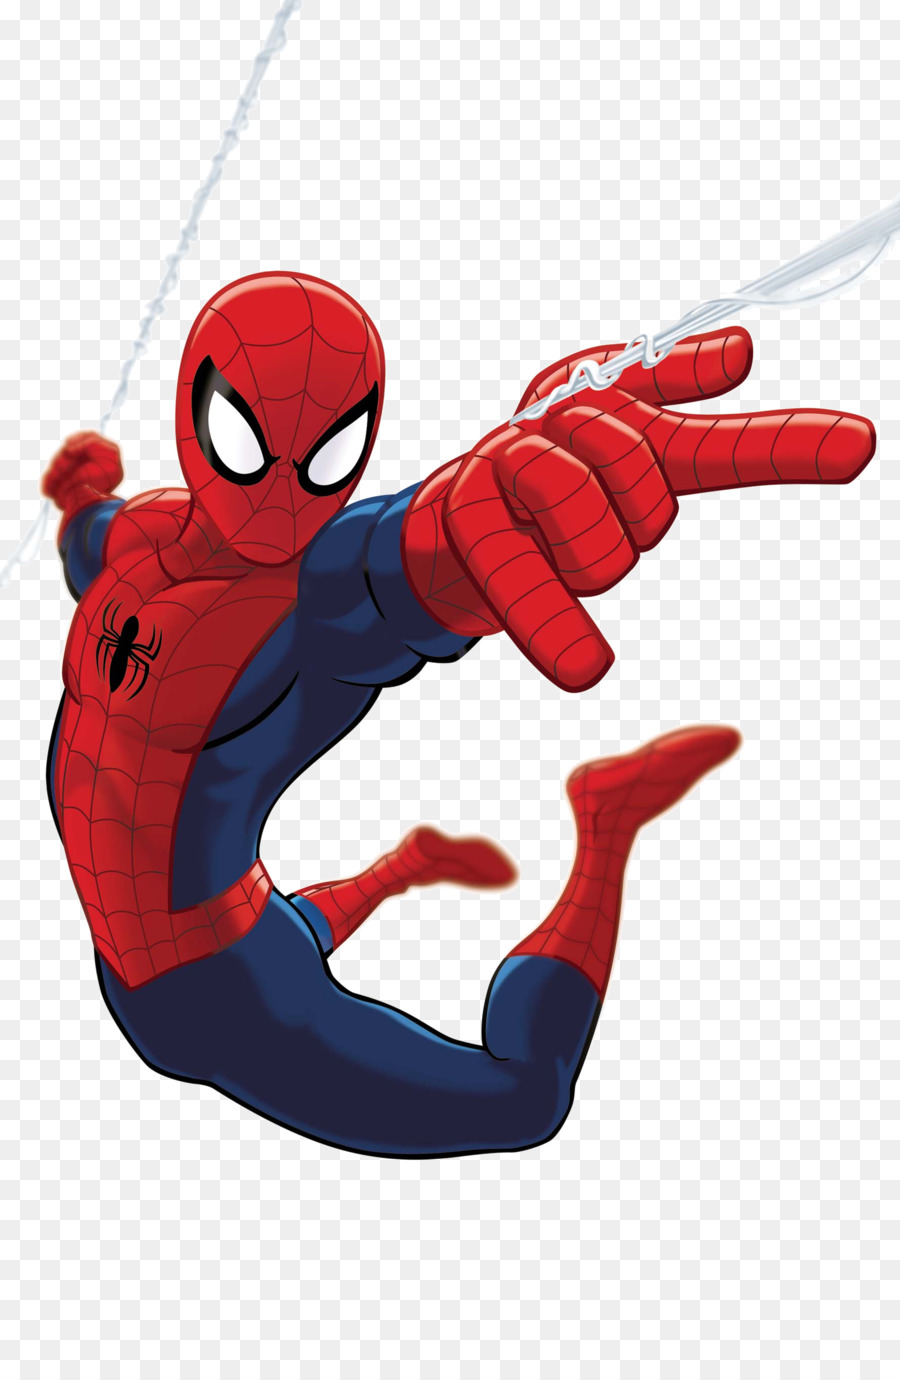 Spider-Man: Shattered Dimensions Ultimate Spider-Man Television show Ultimate Marvel - Ultimate Spiderman Transparent Background png download - 1778*2700 - Free Transparent Spiderman Shattered Dimensions png Download.